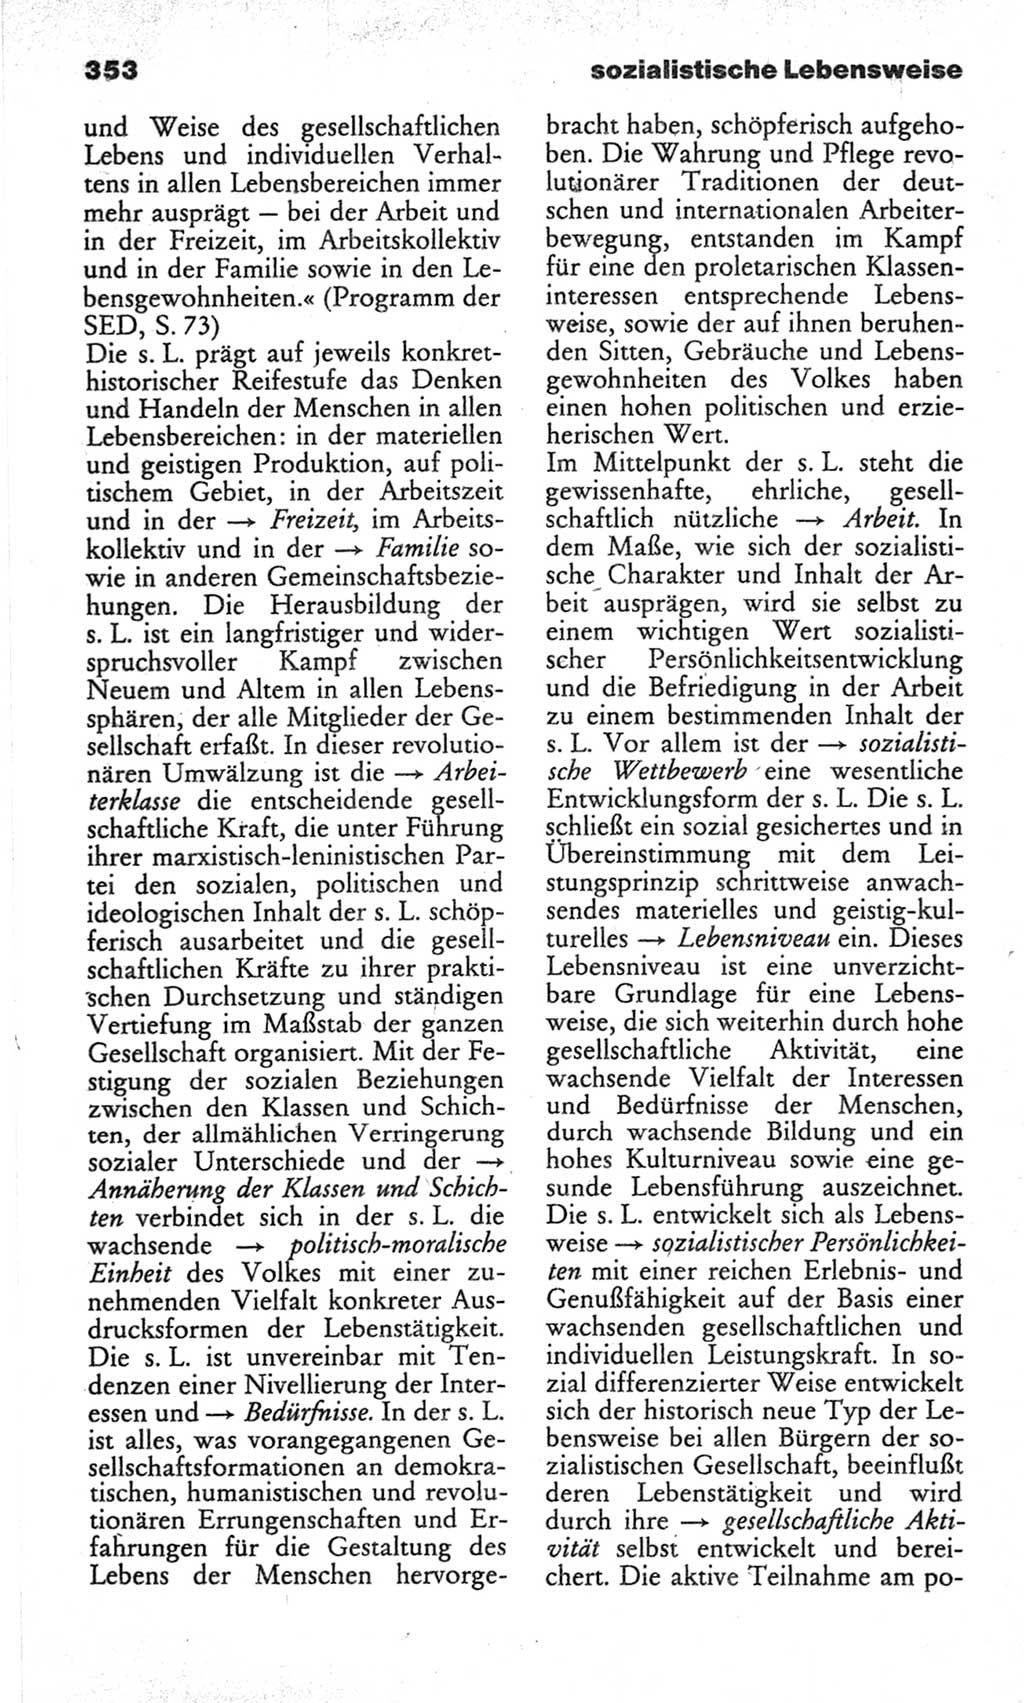 Wörterbuch des wissenschaftlichen Kommunismus [Deutsche Demokratische Republik (DDR)] 1982, Seite 353 (Wb. wiss. Komm. DDR 1982, S. 353)